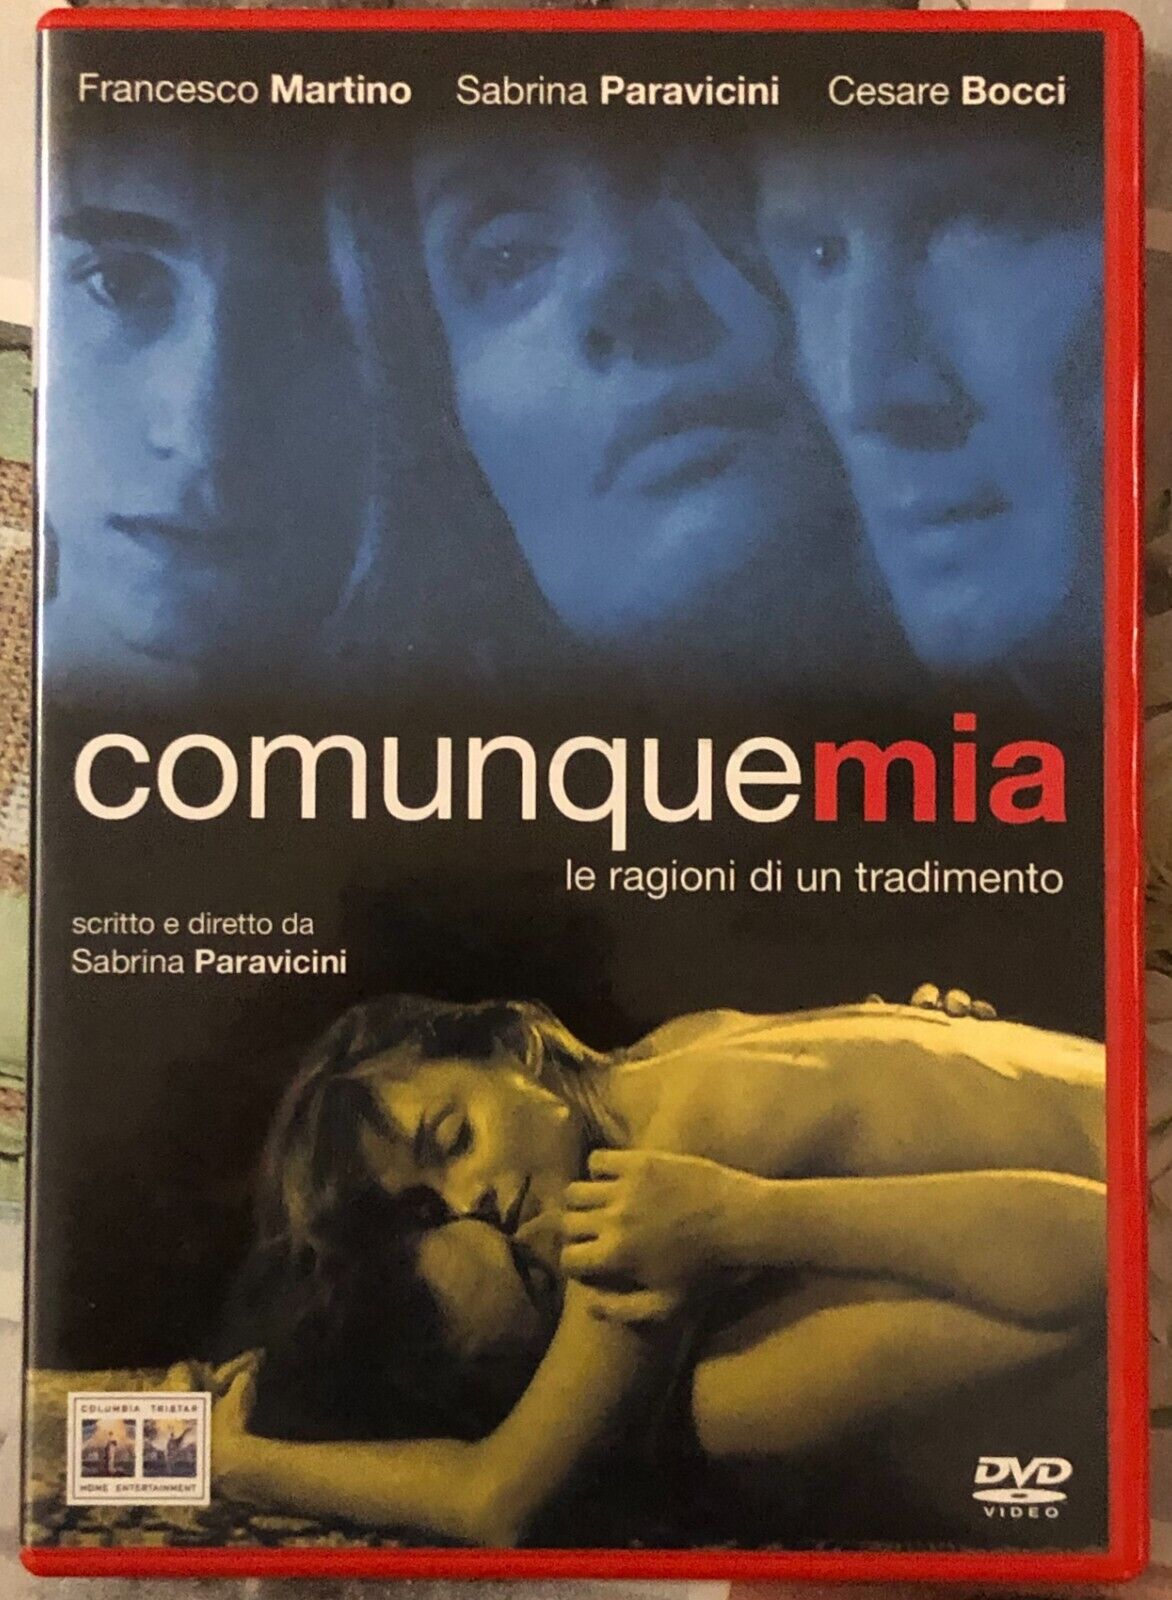  Comunque mia DVD di Sabrina Paravicini, 2004, Columbia Tristar Pictures